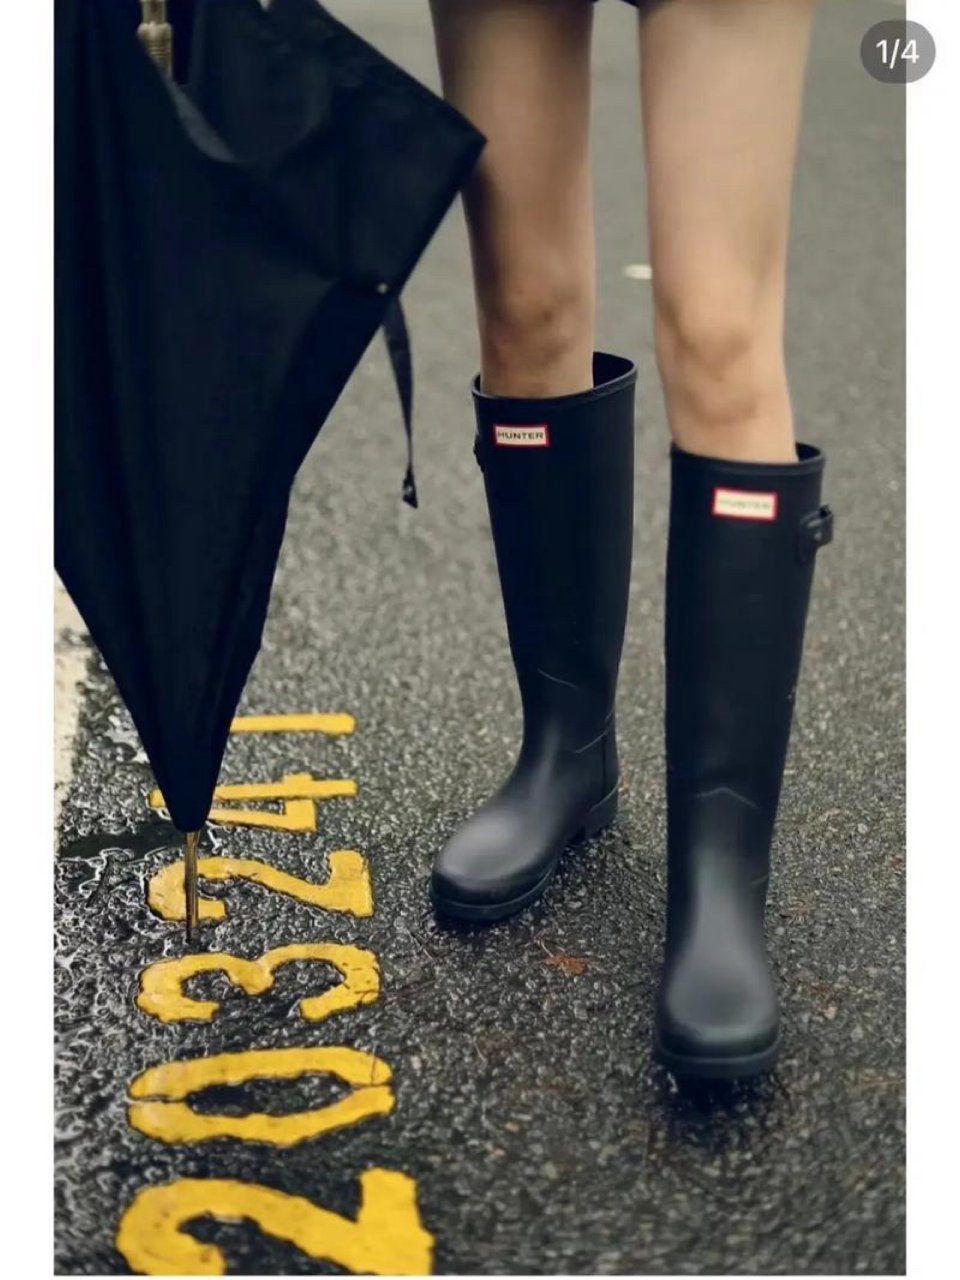 雨水季节必备-Hunter雨靴...